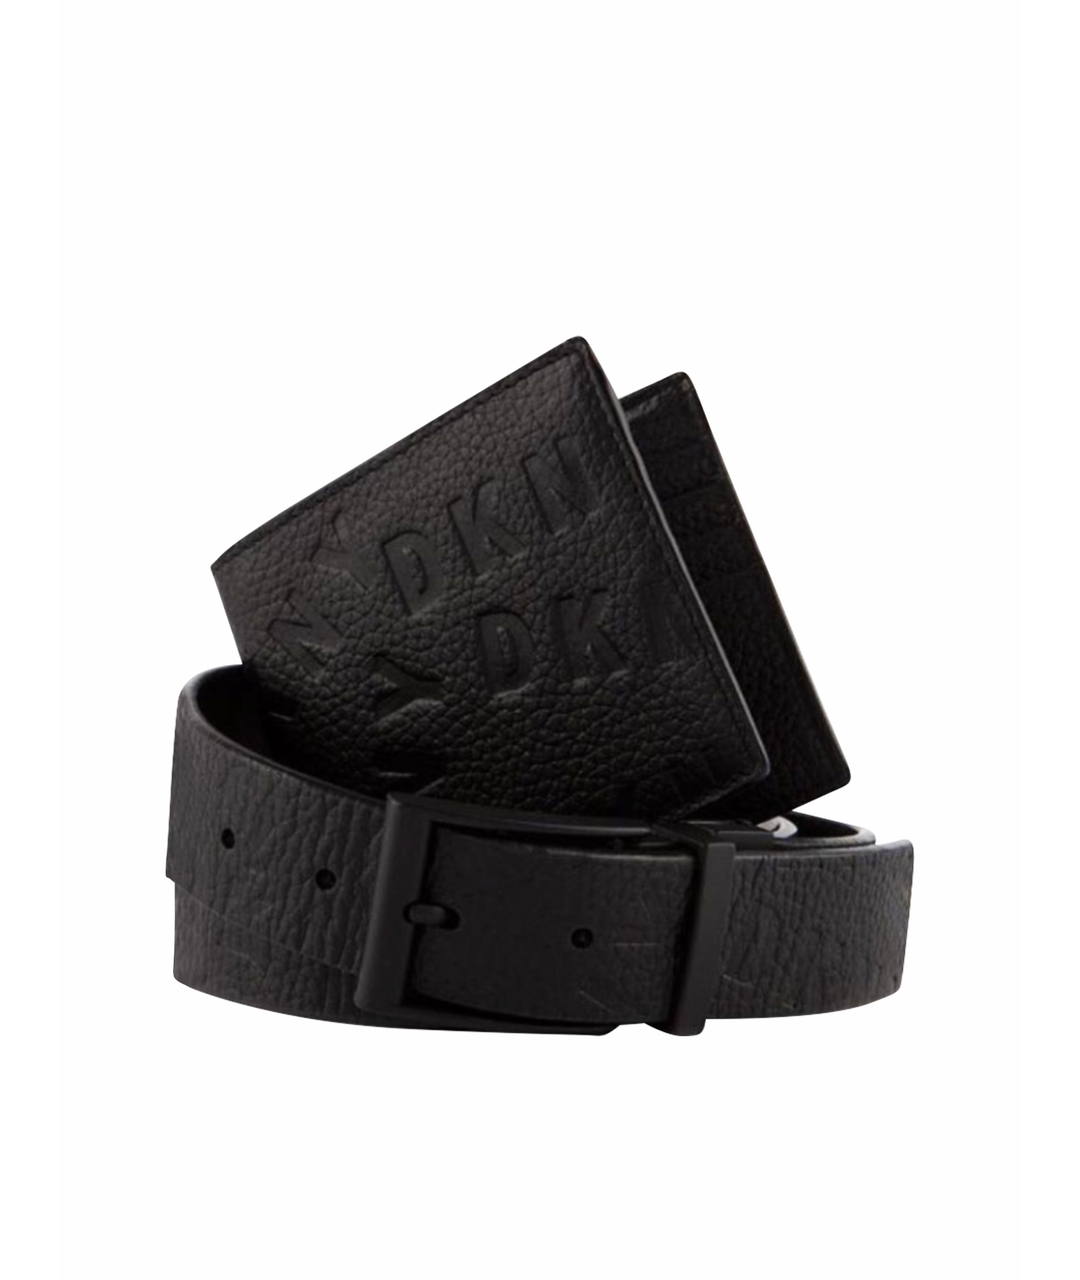 DKNY Черный кожаный кошелек, фото 1